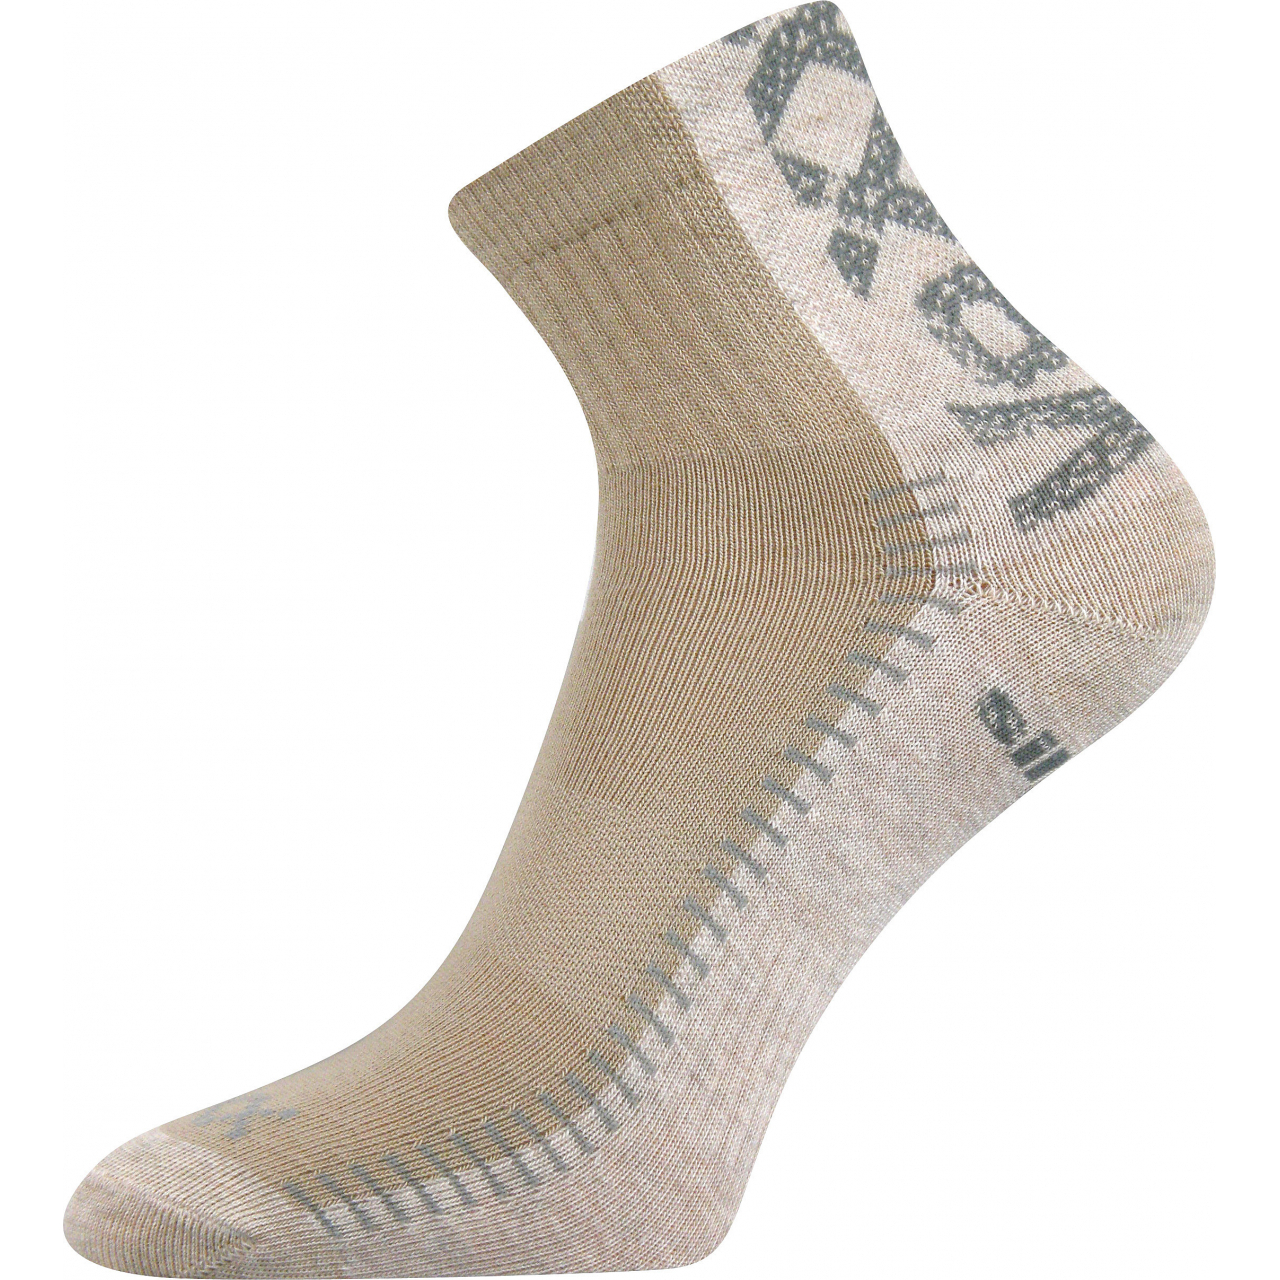 Ponožky sportovní Voxx Revolt - béžové-pískové, 39-42